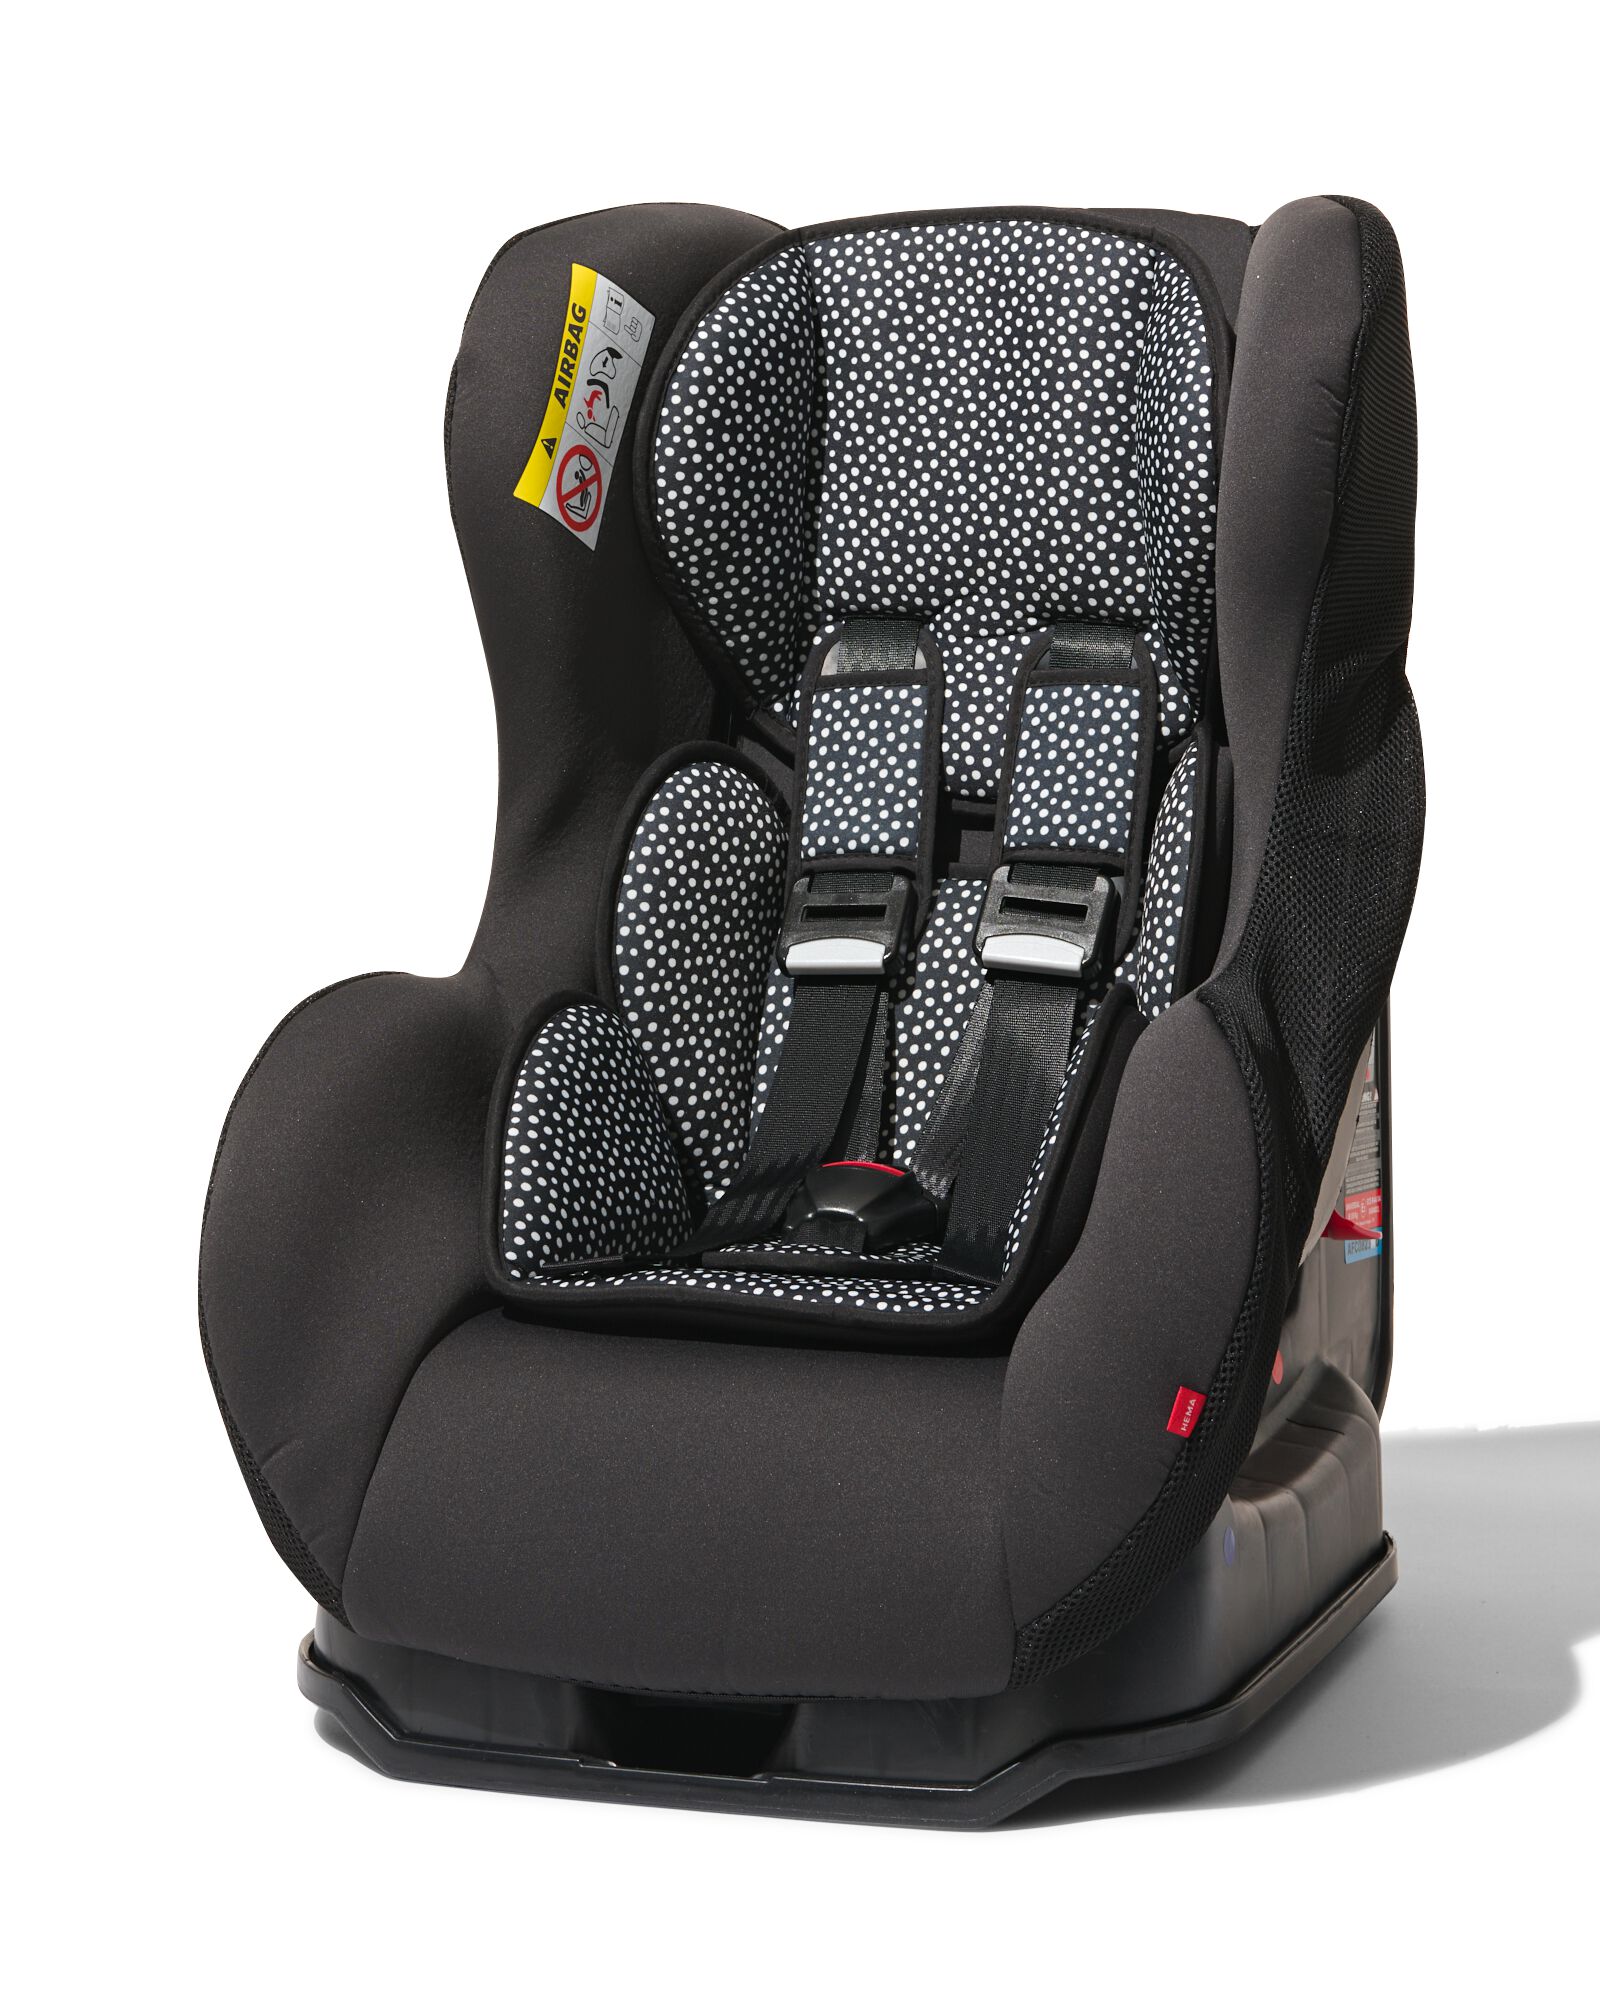 siège auto bébé 0-25kg pois noirs/blancs - HEMA